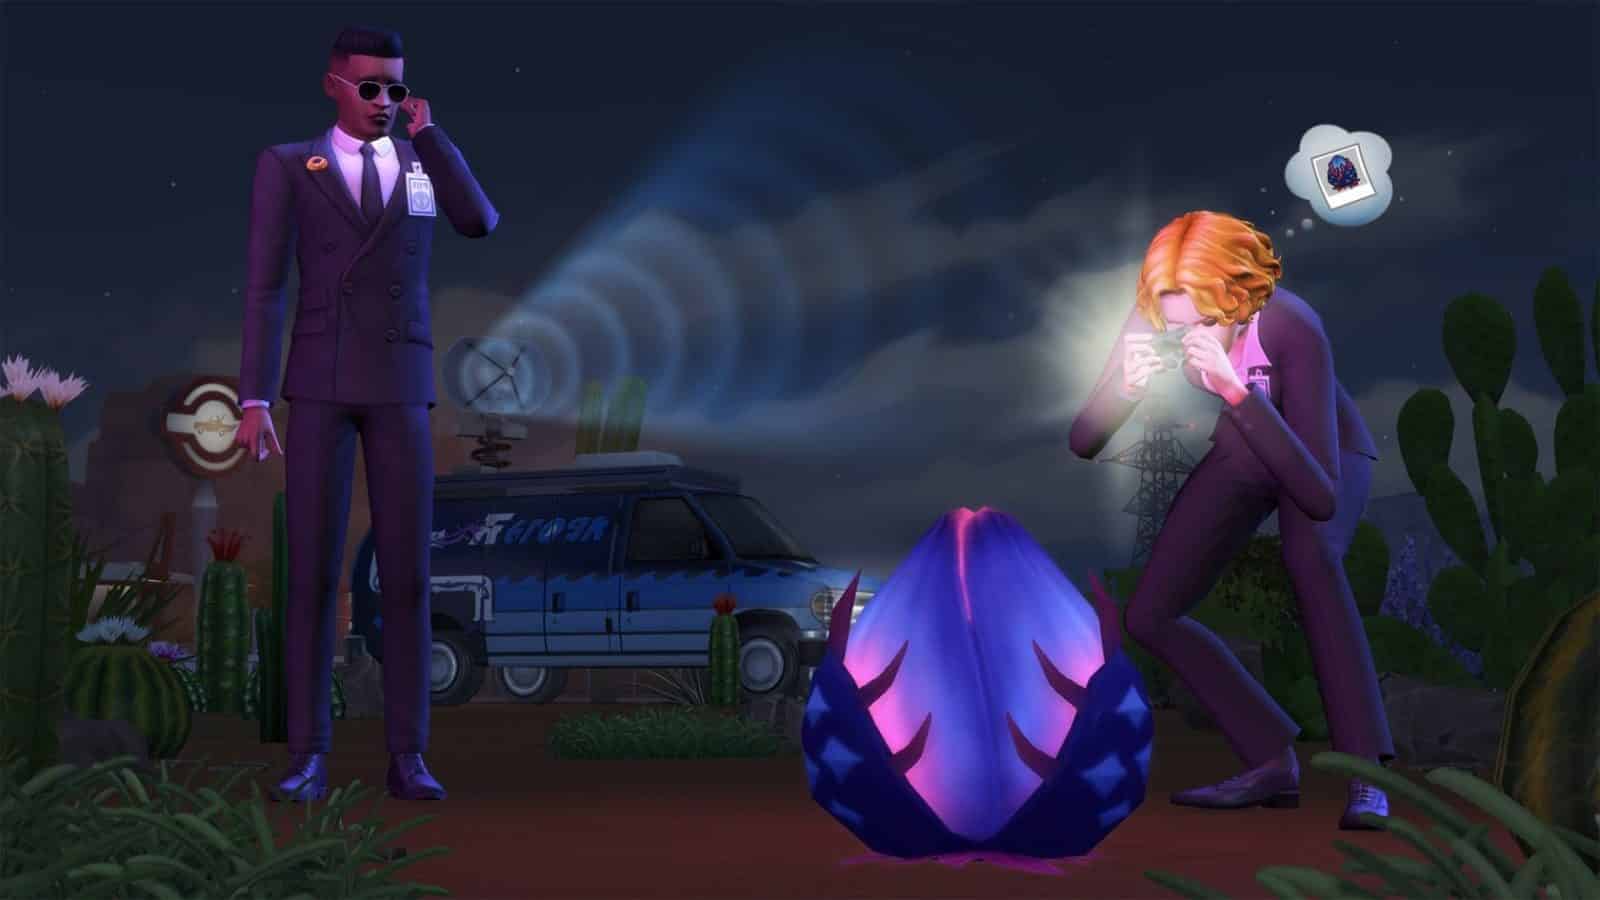 Die Sims 4 - StrangerVille